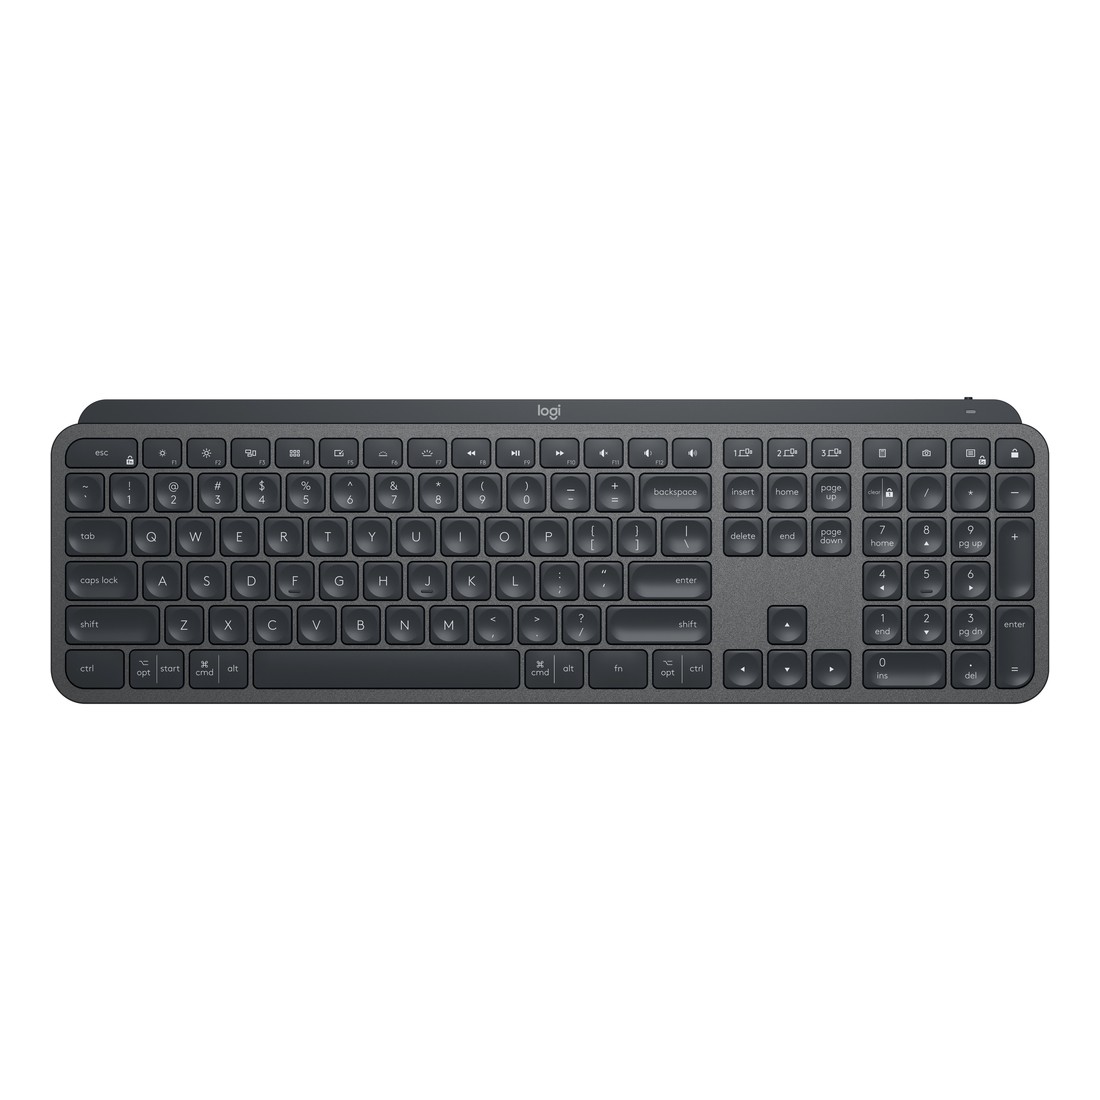 Logitech 920-010088 MX Keys Advanced Illuminated Keyboard - Graphite (US English)